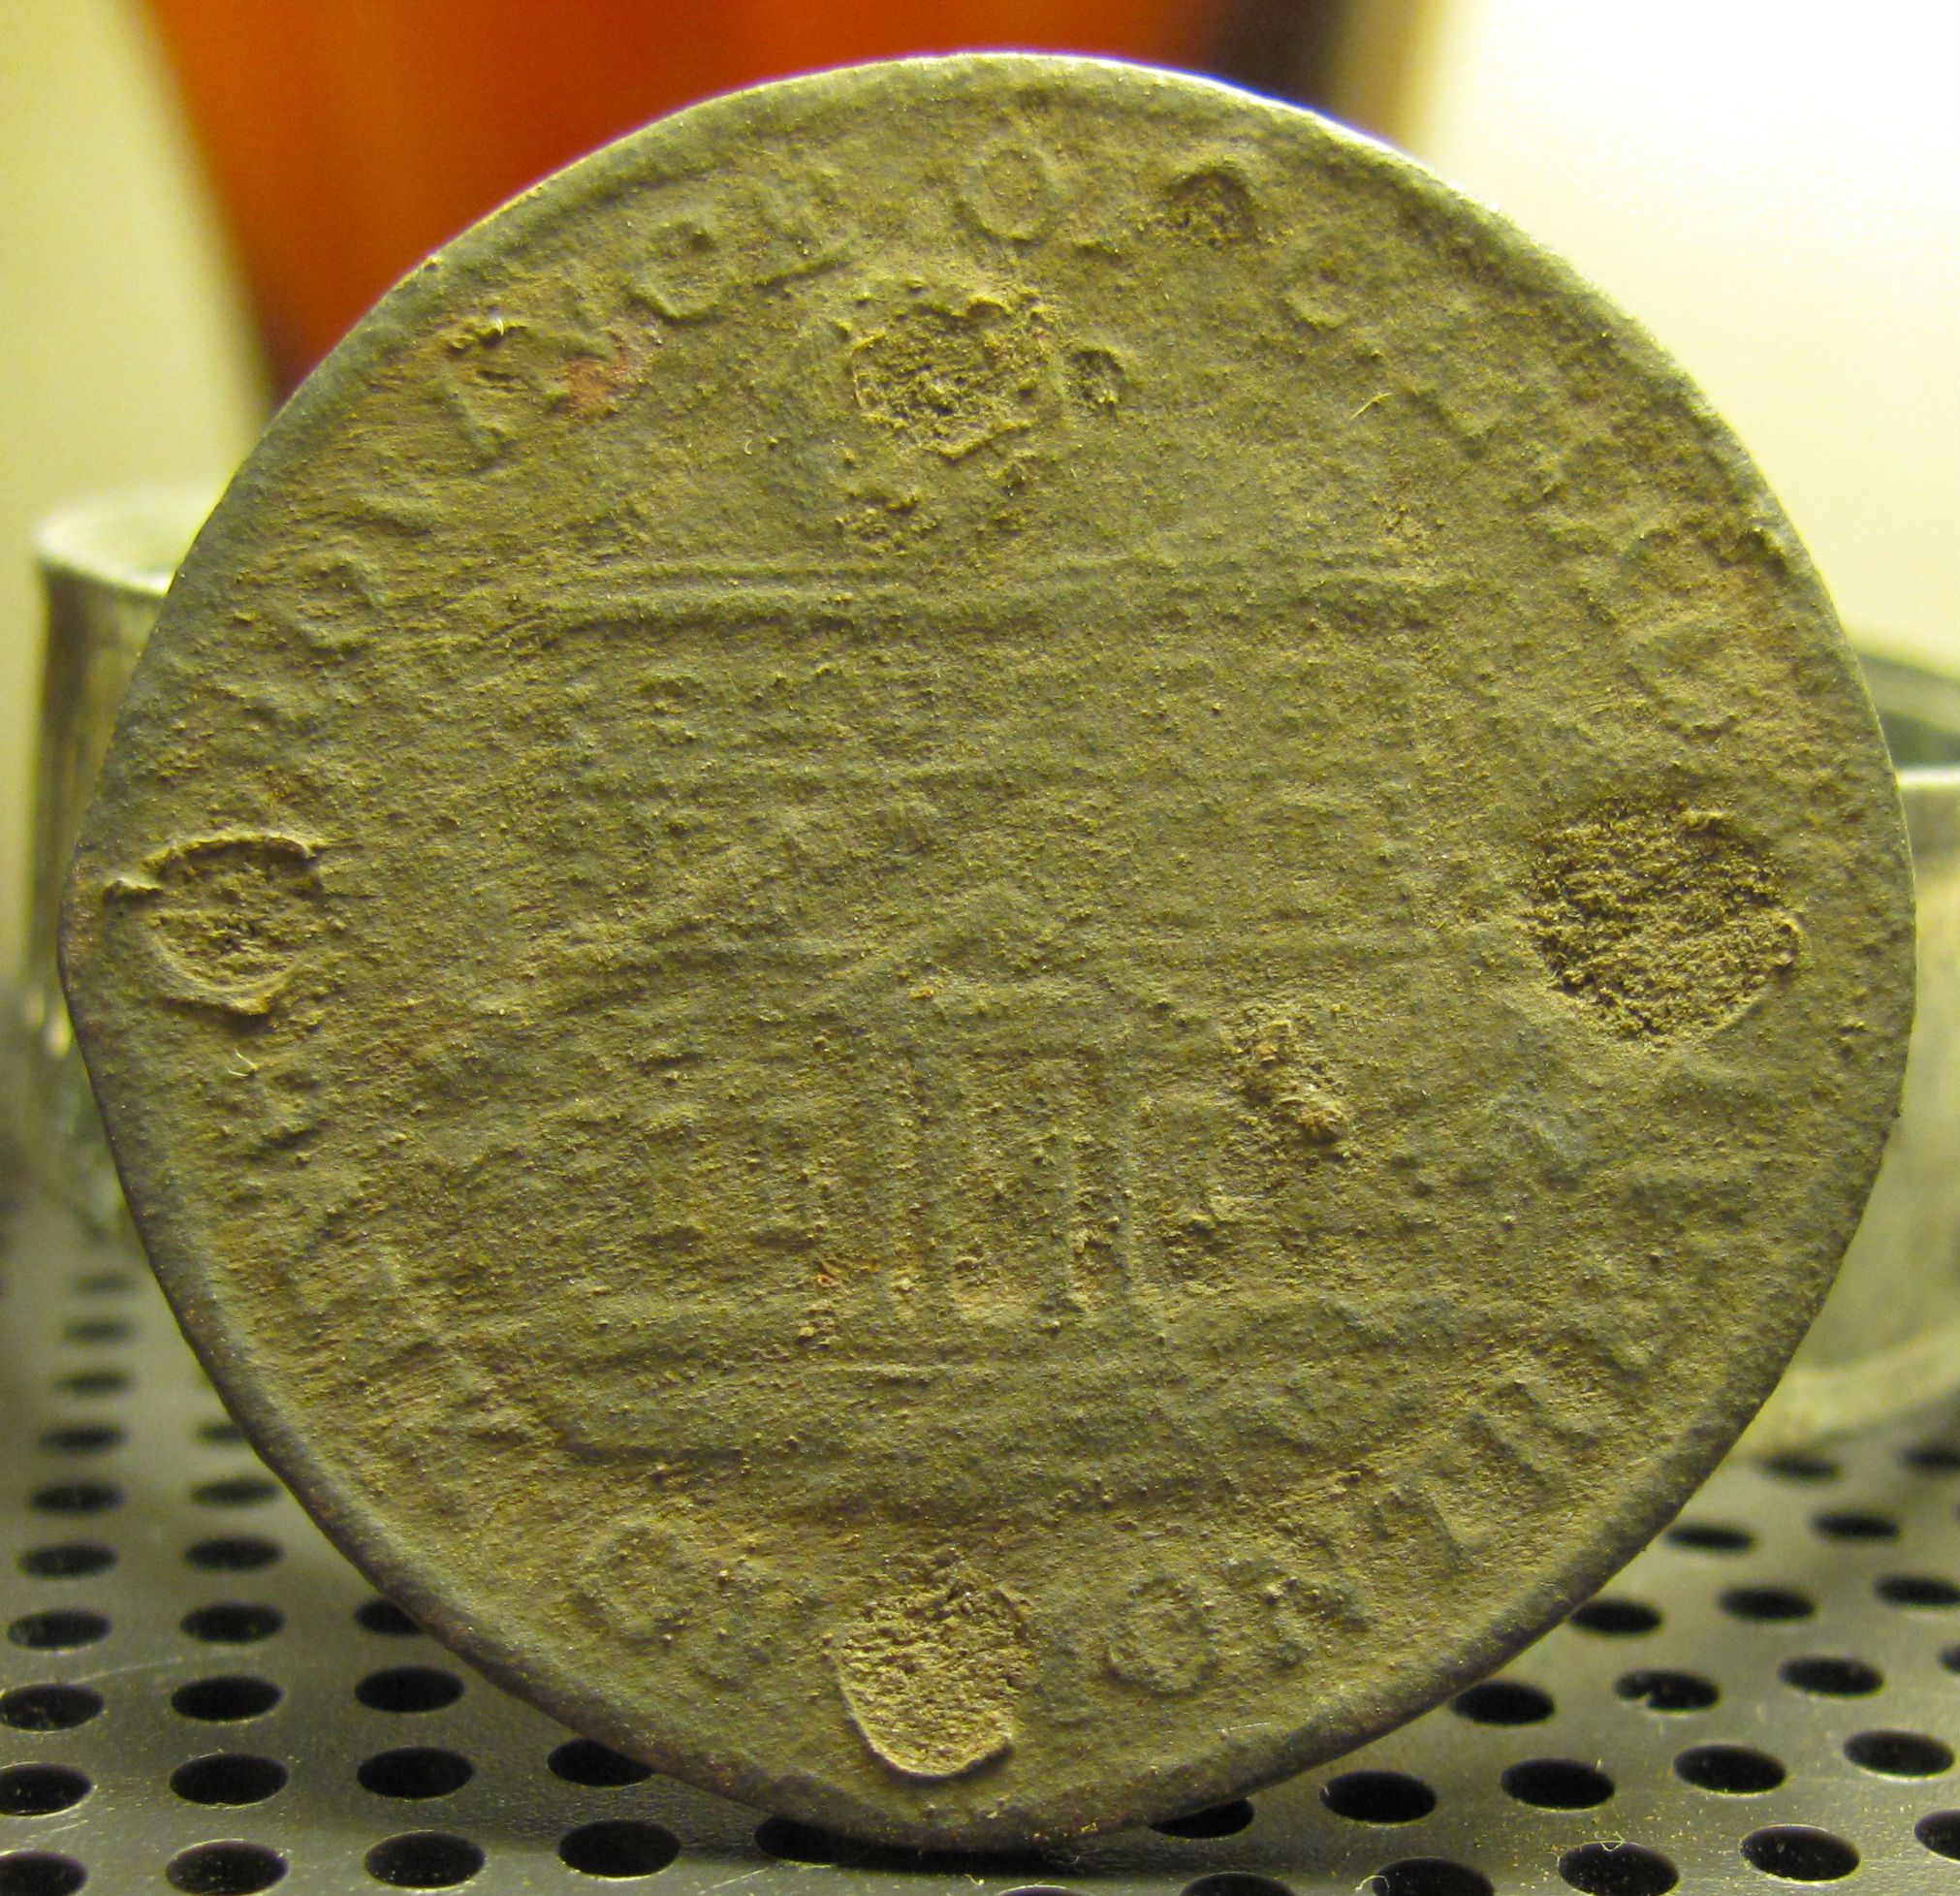 1837 Bank of Montreal half-penny token. Oct. 2012